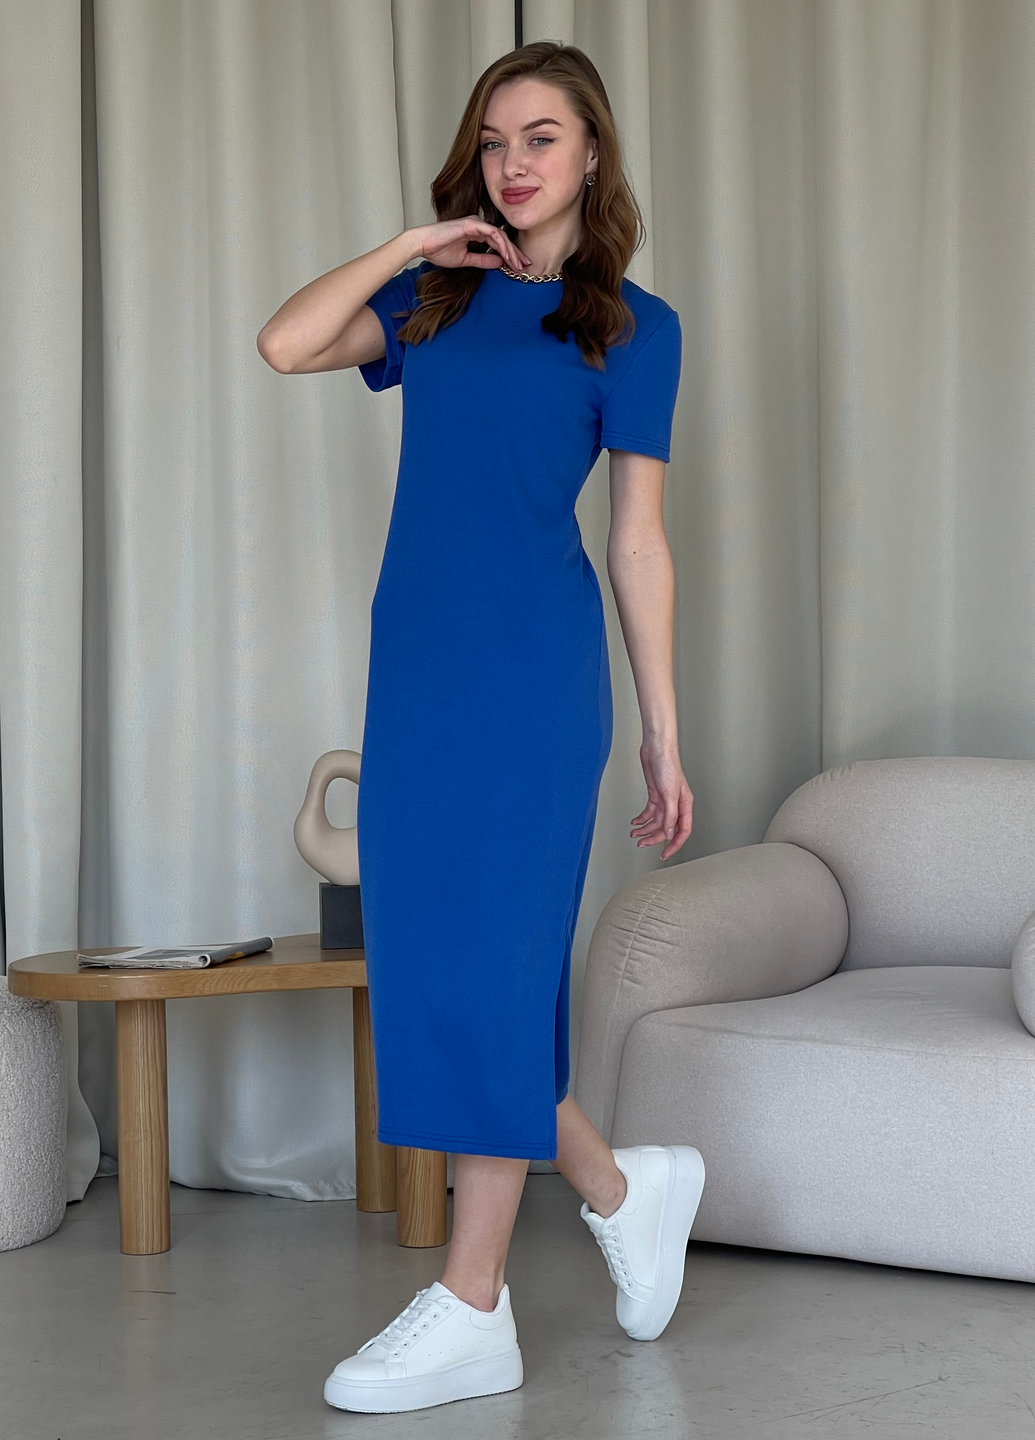 Купить Длинное платье-футболка в рубчик синее Merlini Кассо 700000127 размер 42-44 (S-M) в интернет-магазине